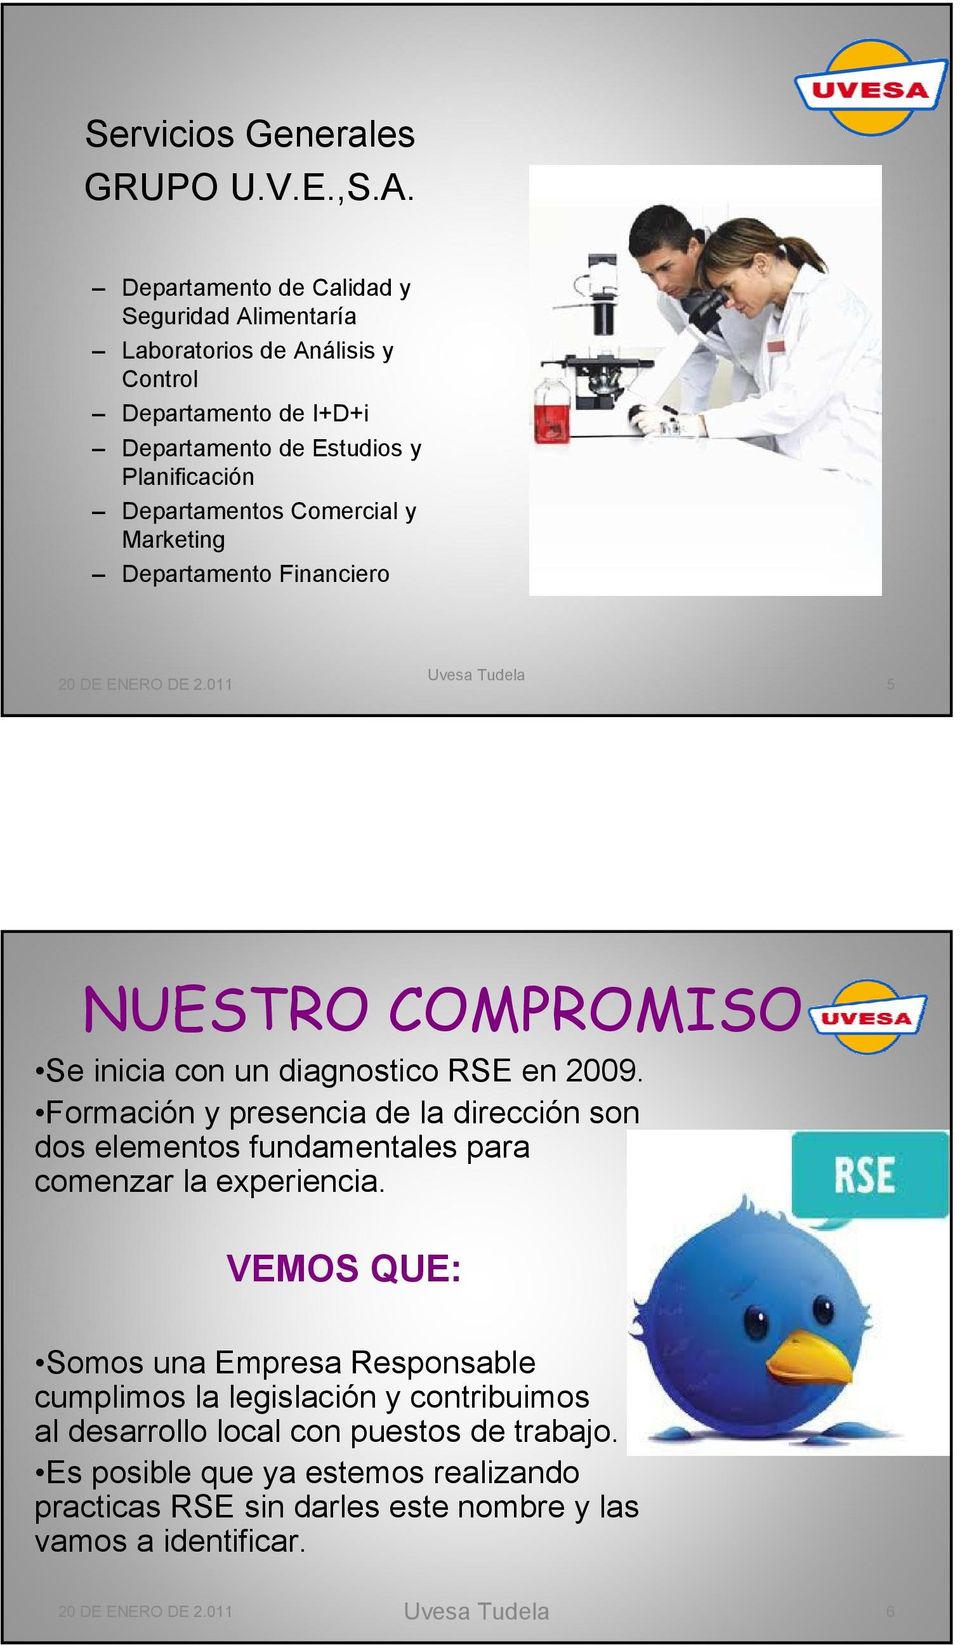 Marketing Departamento Financiero 20 DE ENERO DE 2.011 Uvesa Tudela 5 NUESTRO COMPROMISO Se inicia con un diagnostico RSE en 2009.